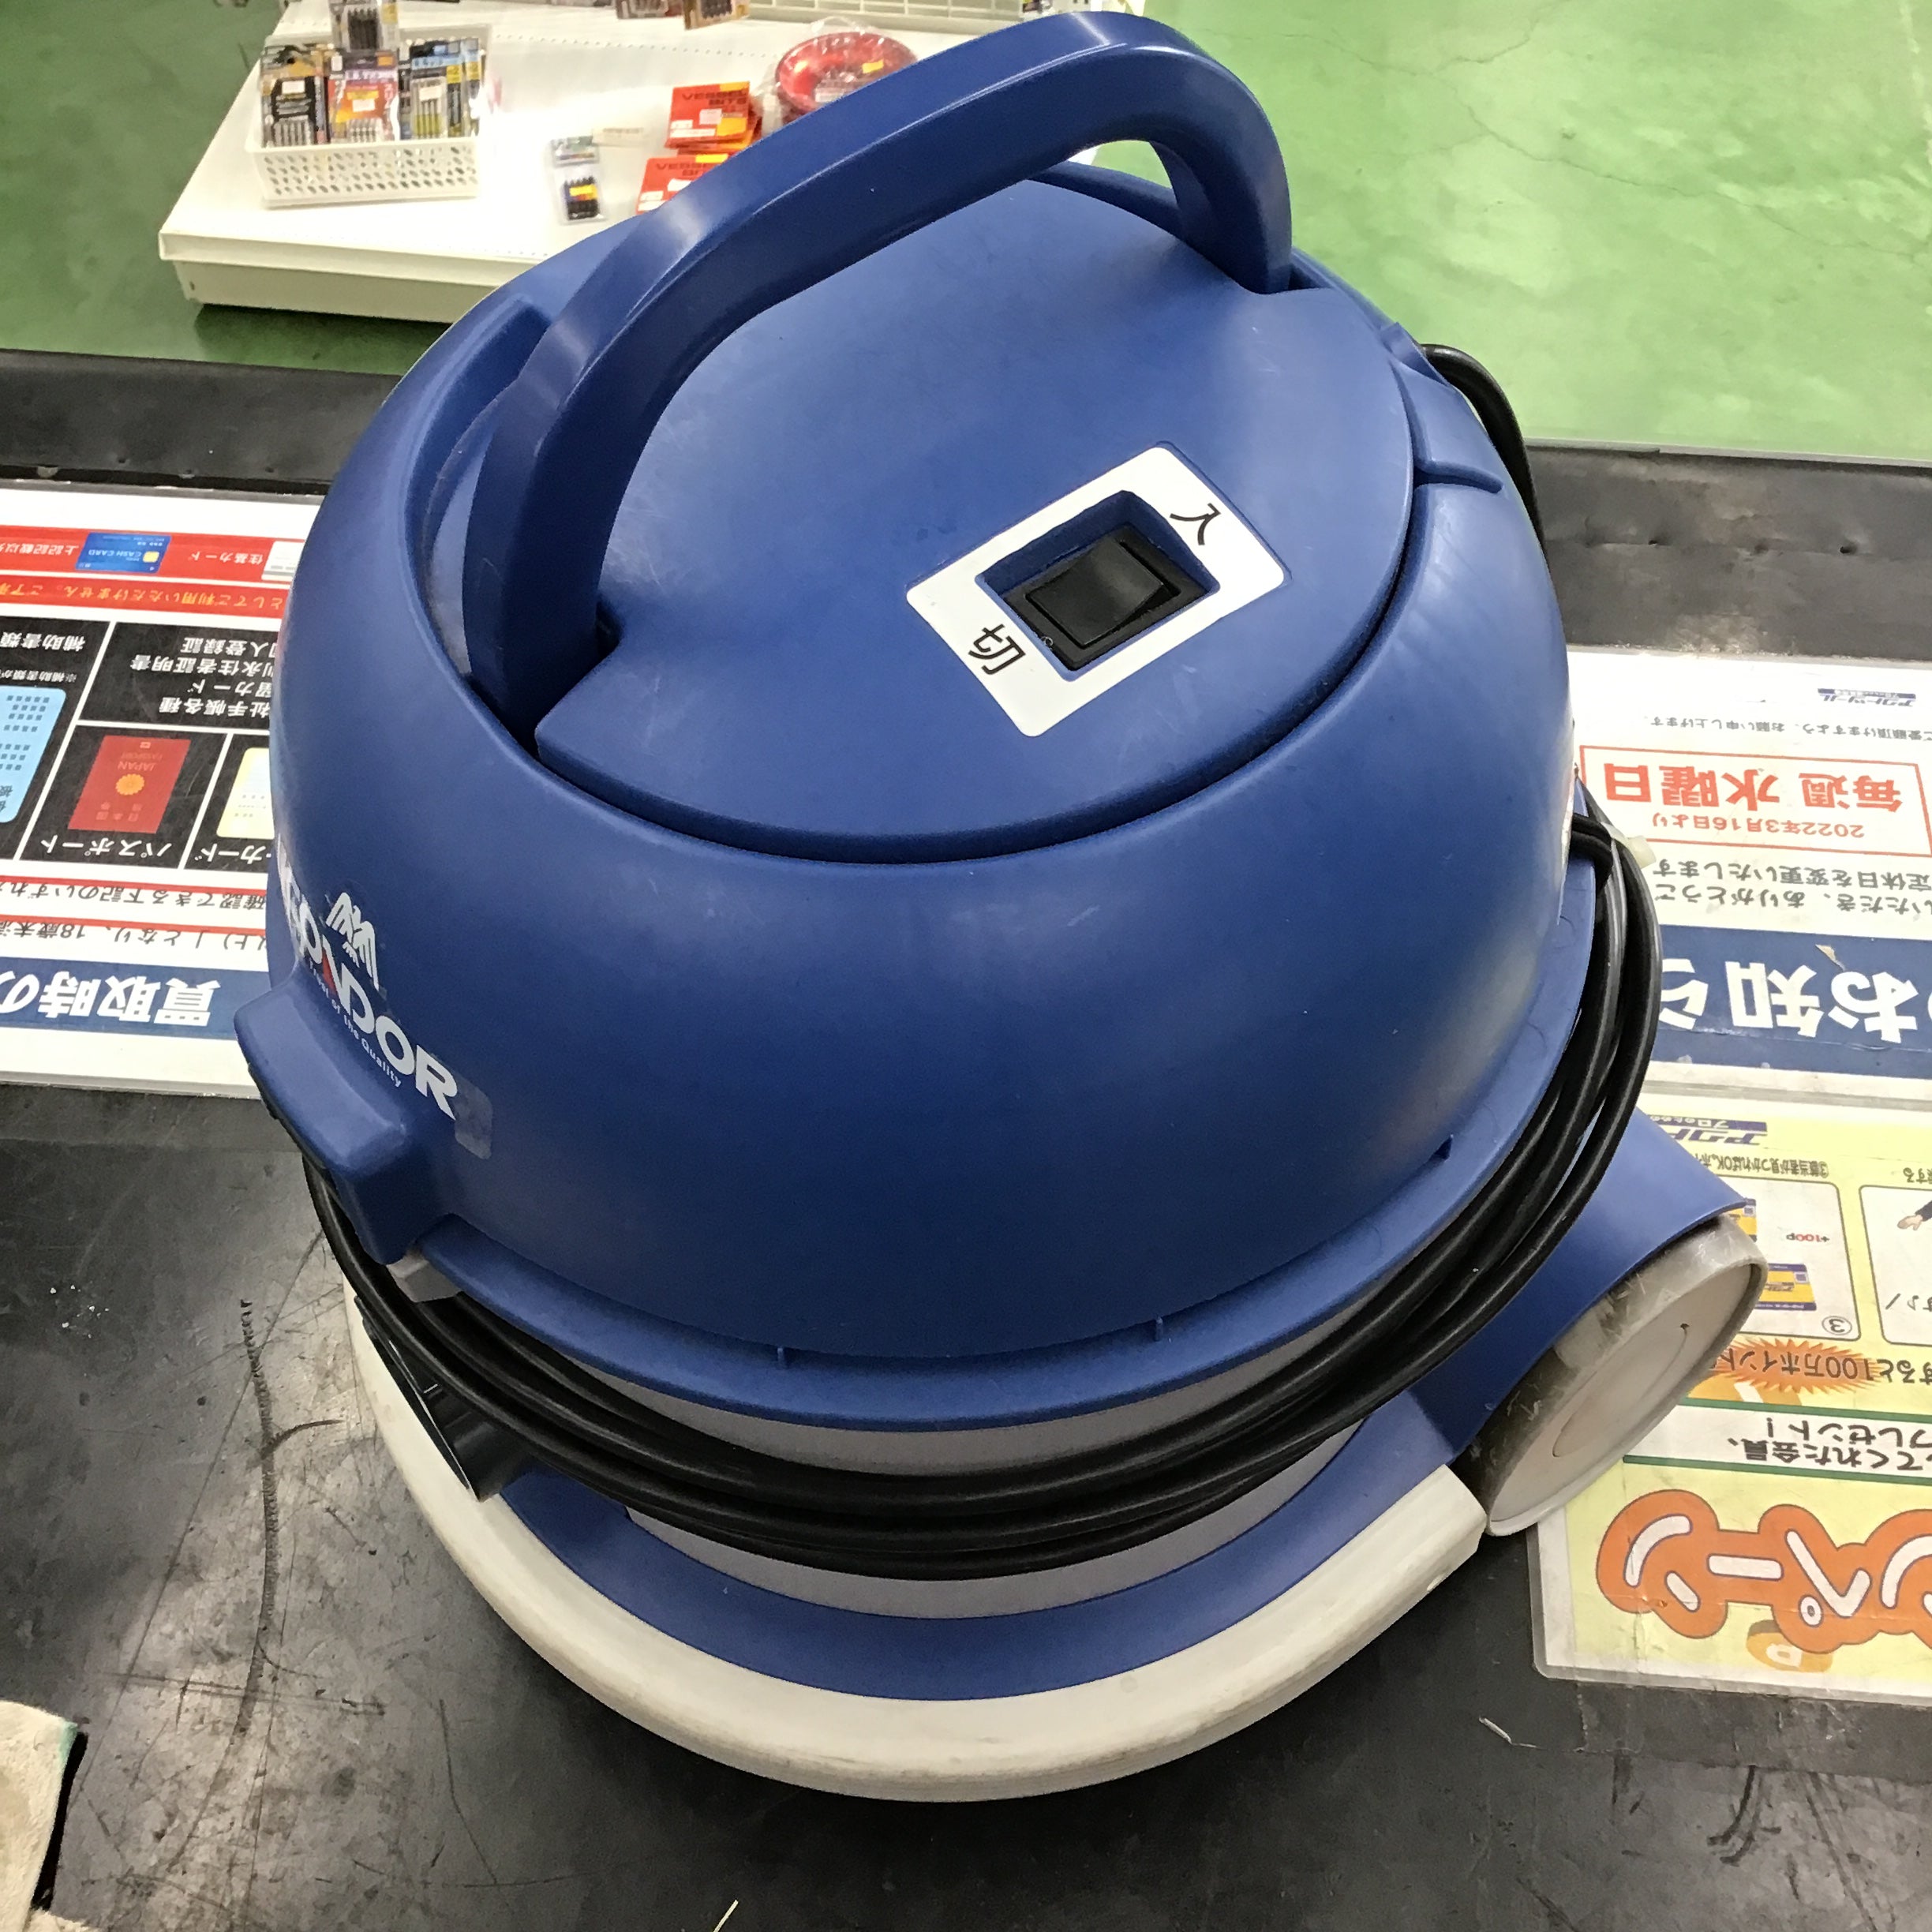 山崎産業 コンドルバキュームクリーナー CVC-301X 【桶川店】 アクトツールオンラインショップ